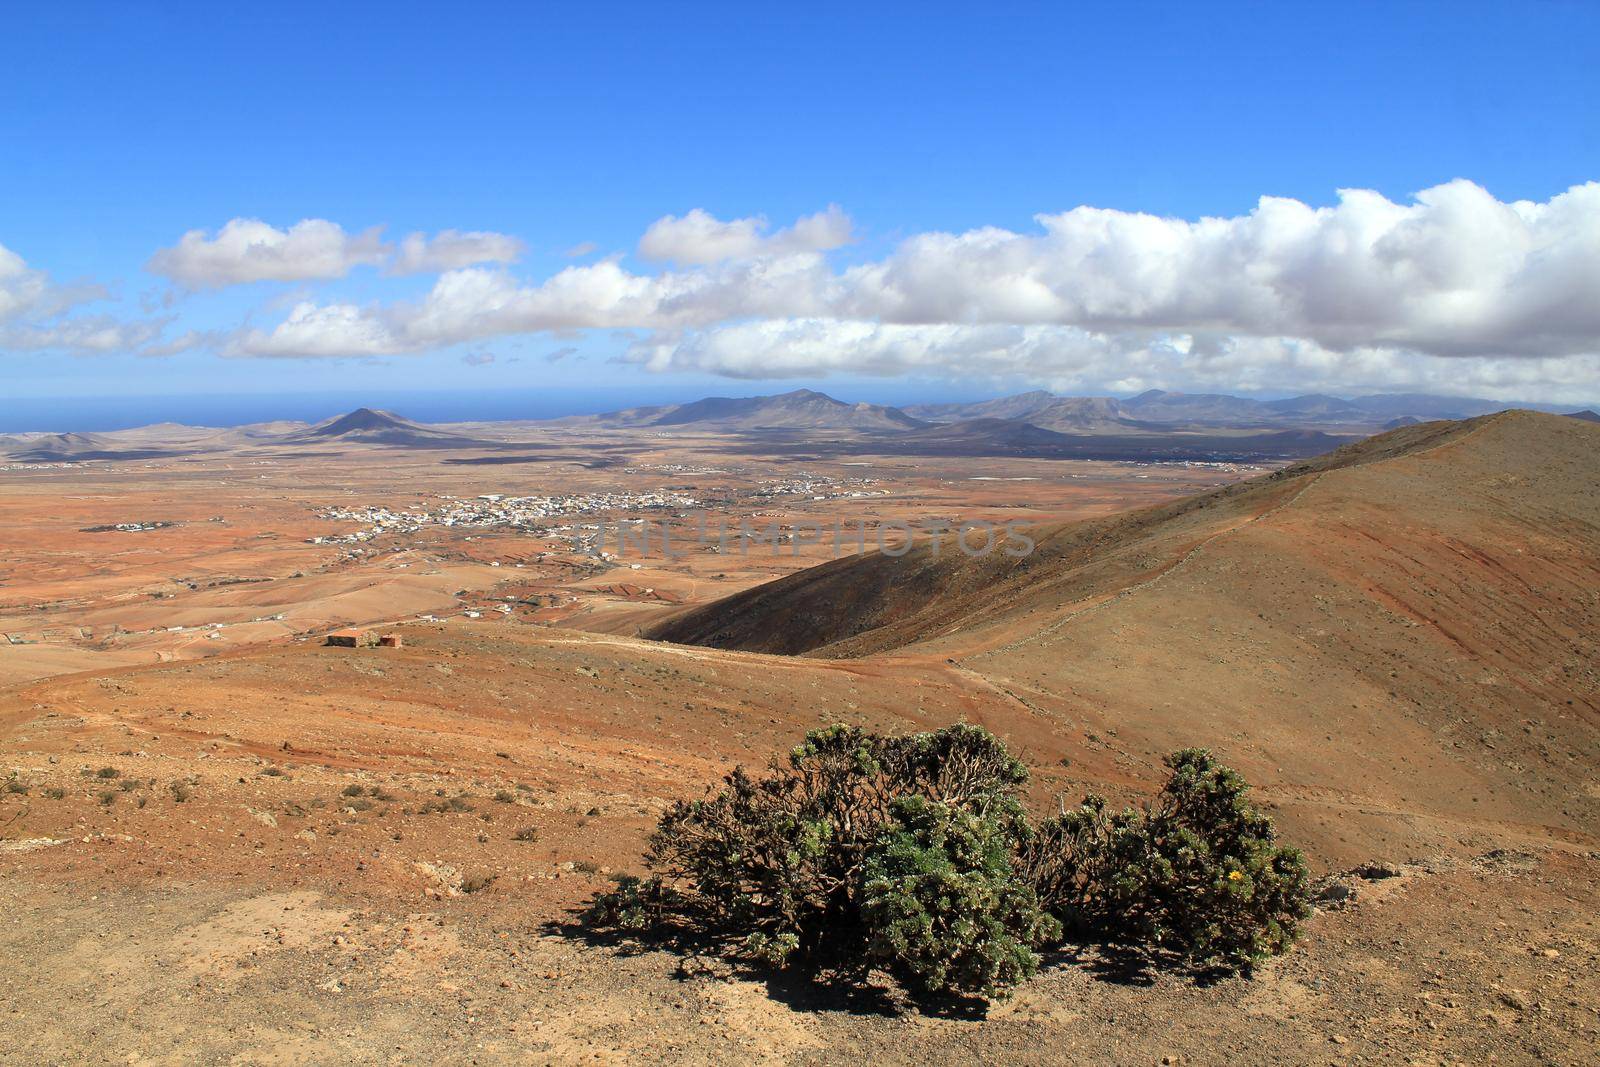 Mountain scenery landscape, Fuerteventura, Spain by JackyBrown